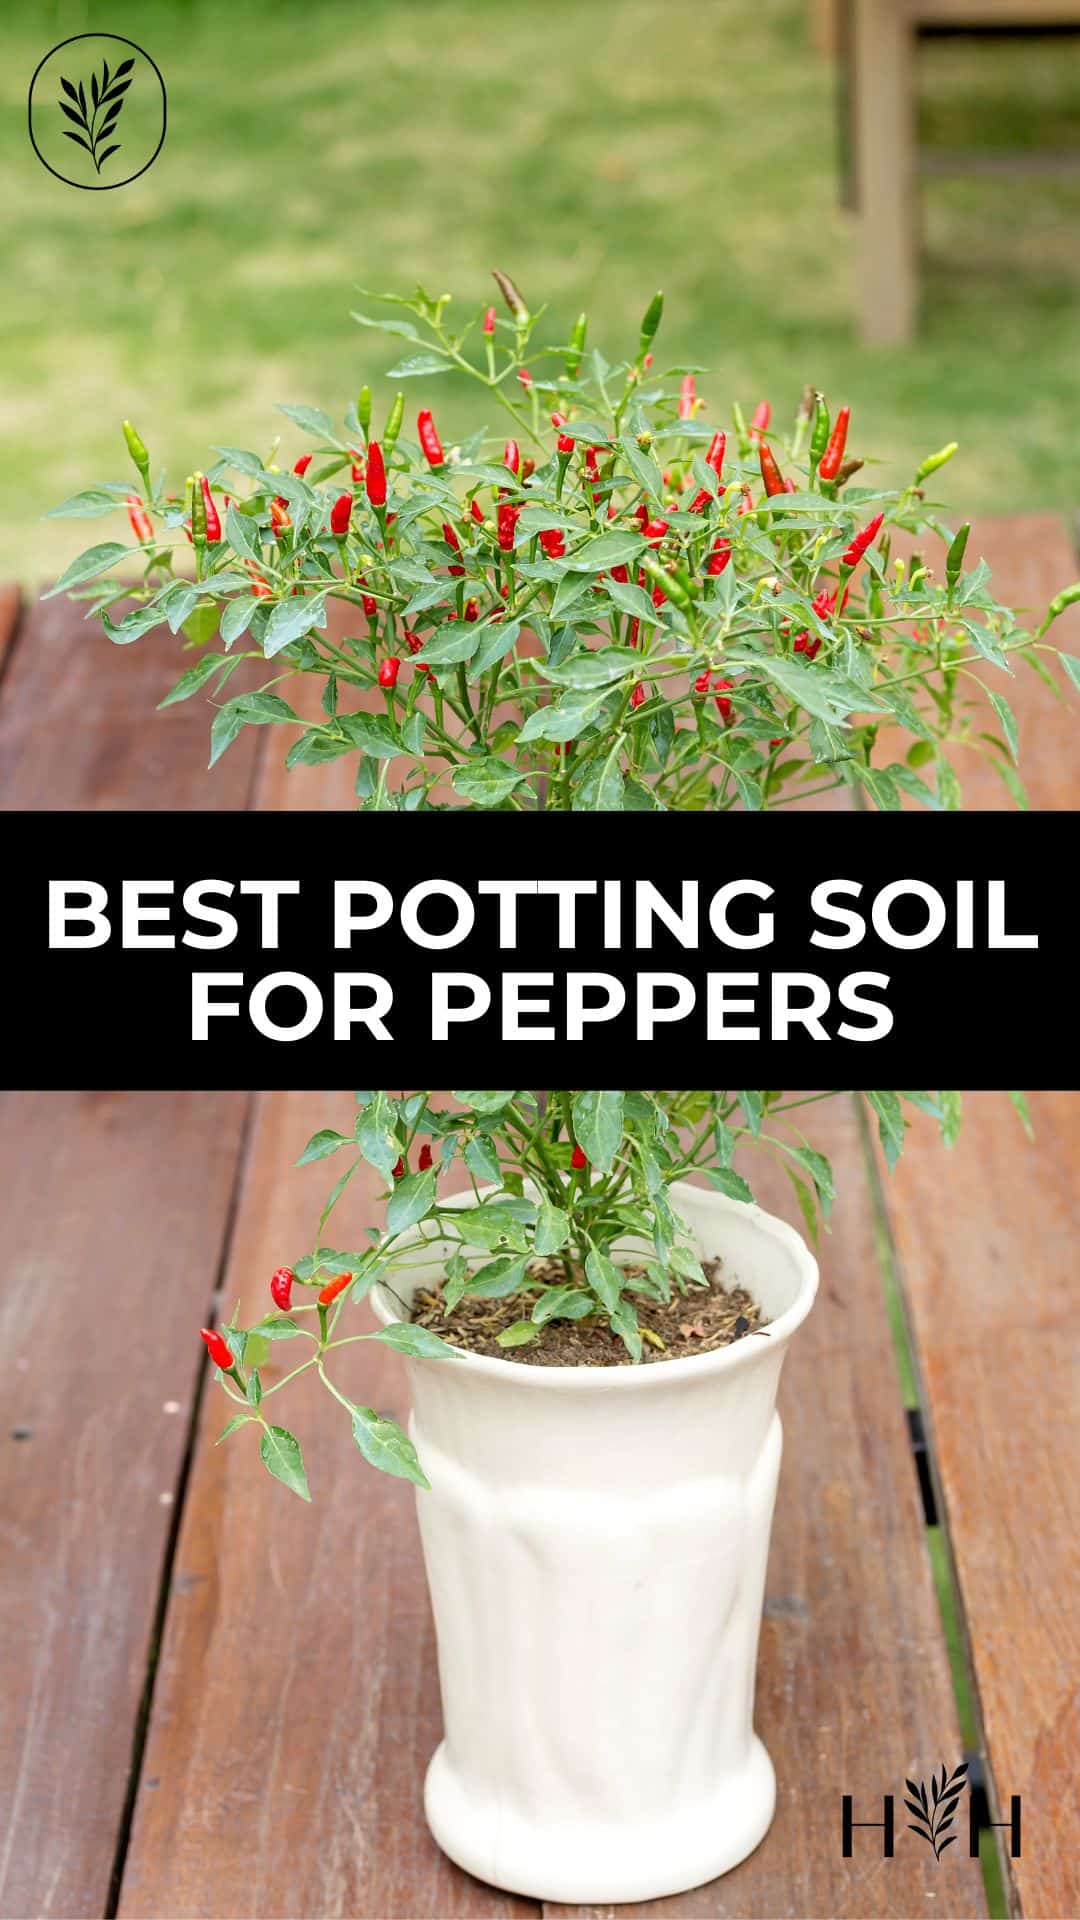 Best potting soil for peppers via @home4theharvest